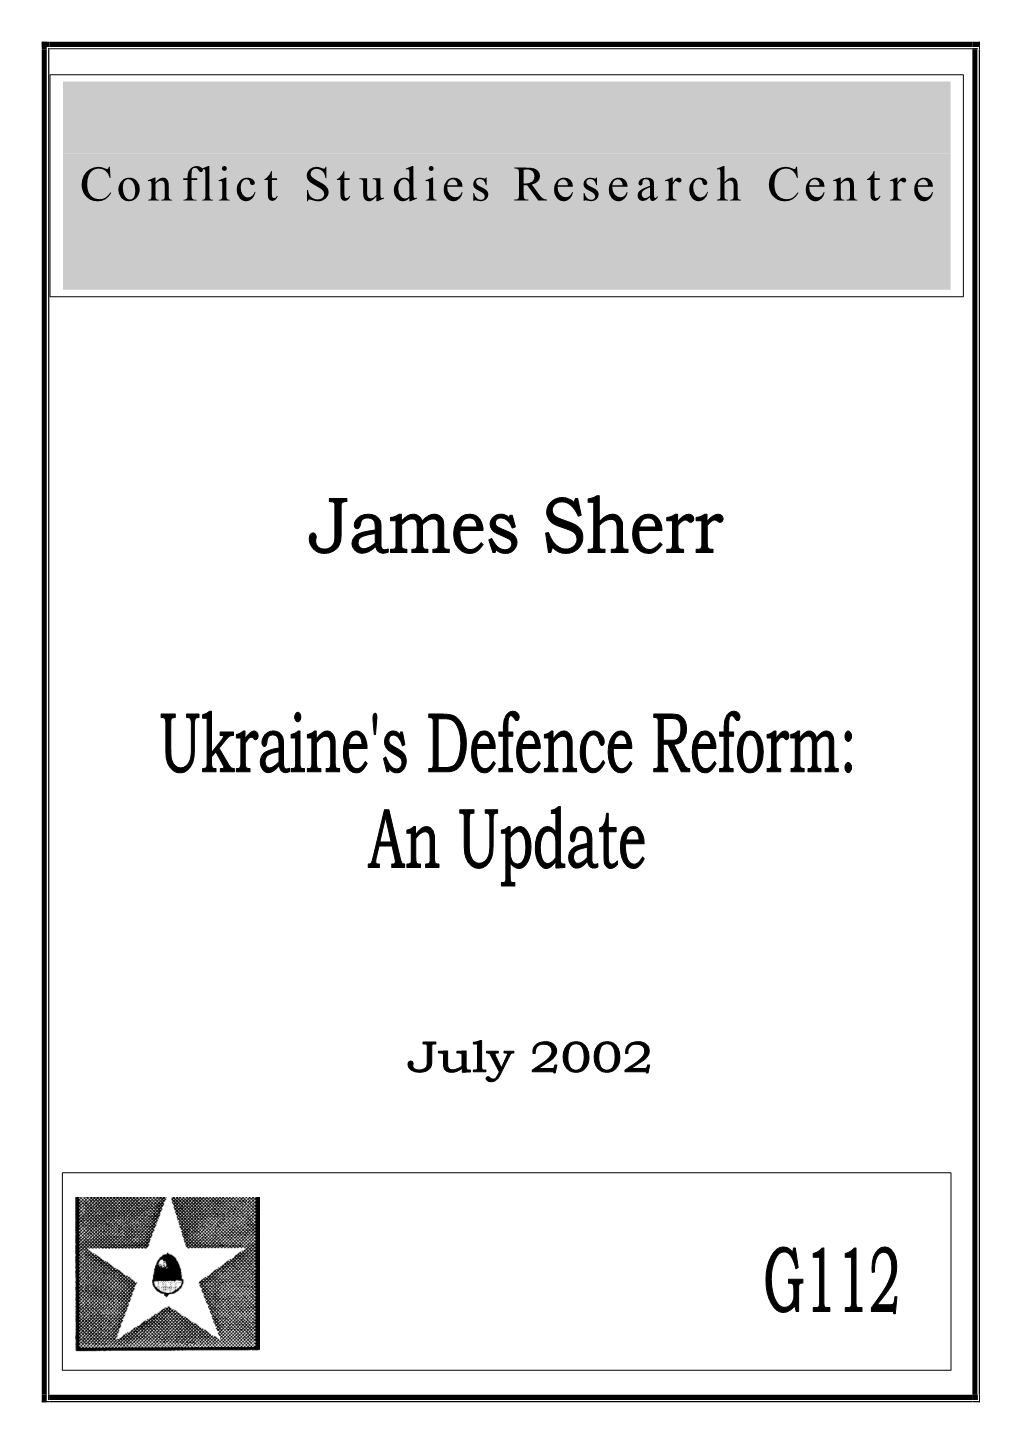 Ukraine's Defense Reform: an Update